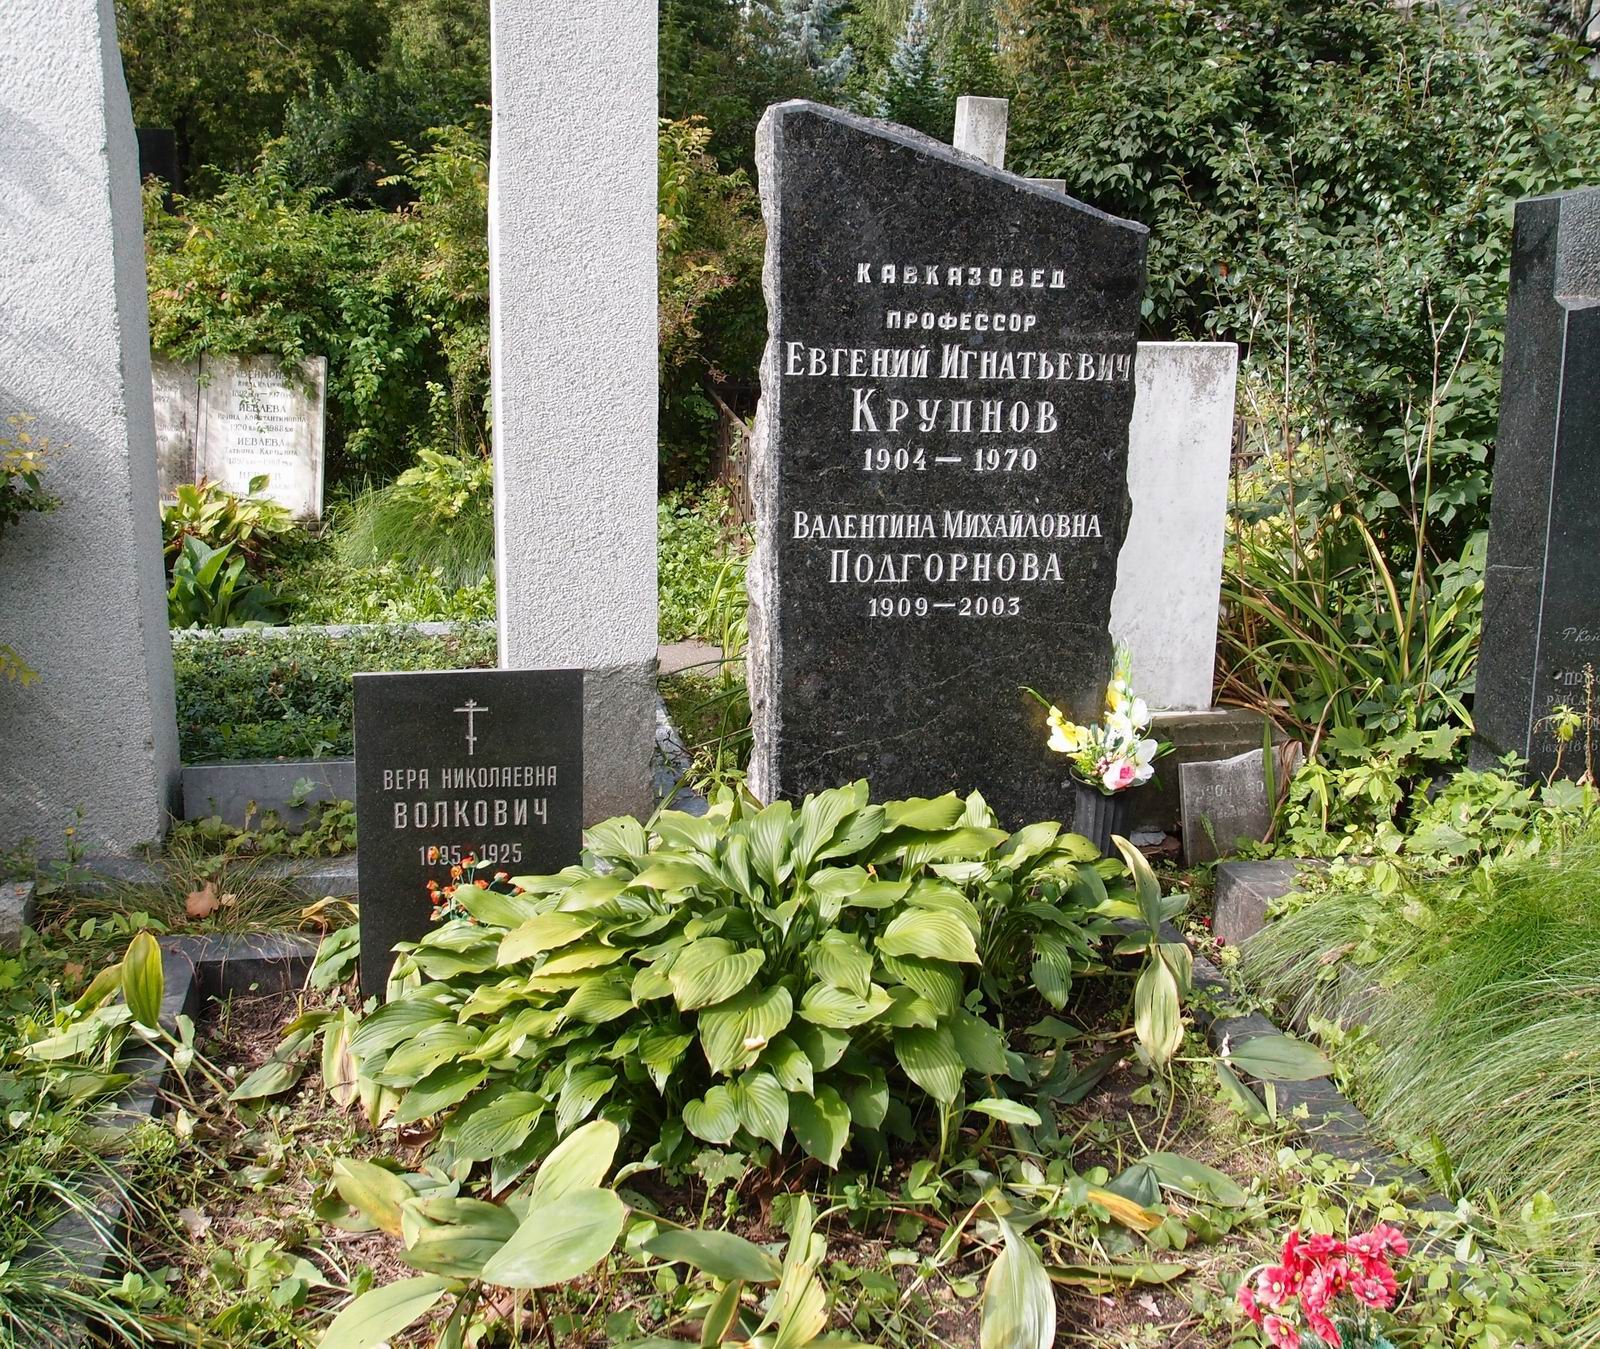 Памятник на могиле Крупнова Е.И. (1904-1970), на Новодевичьем кладбище (3-5-9).